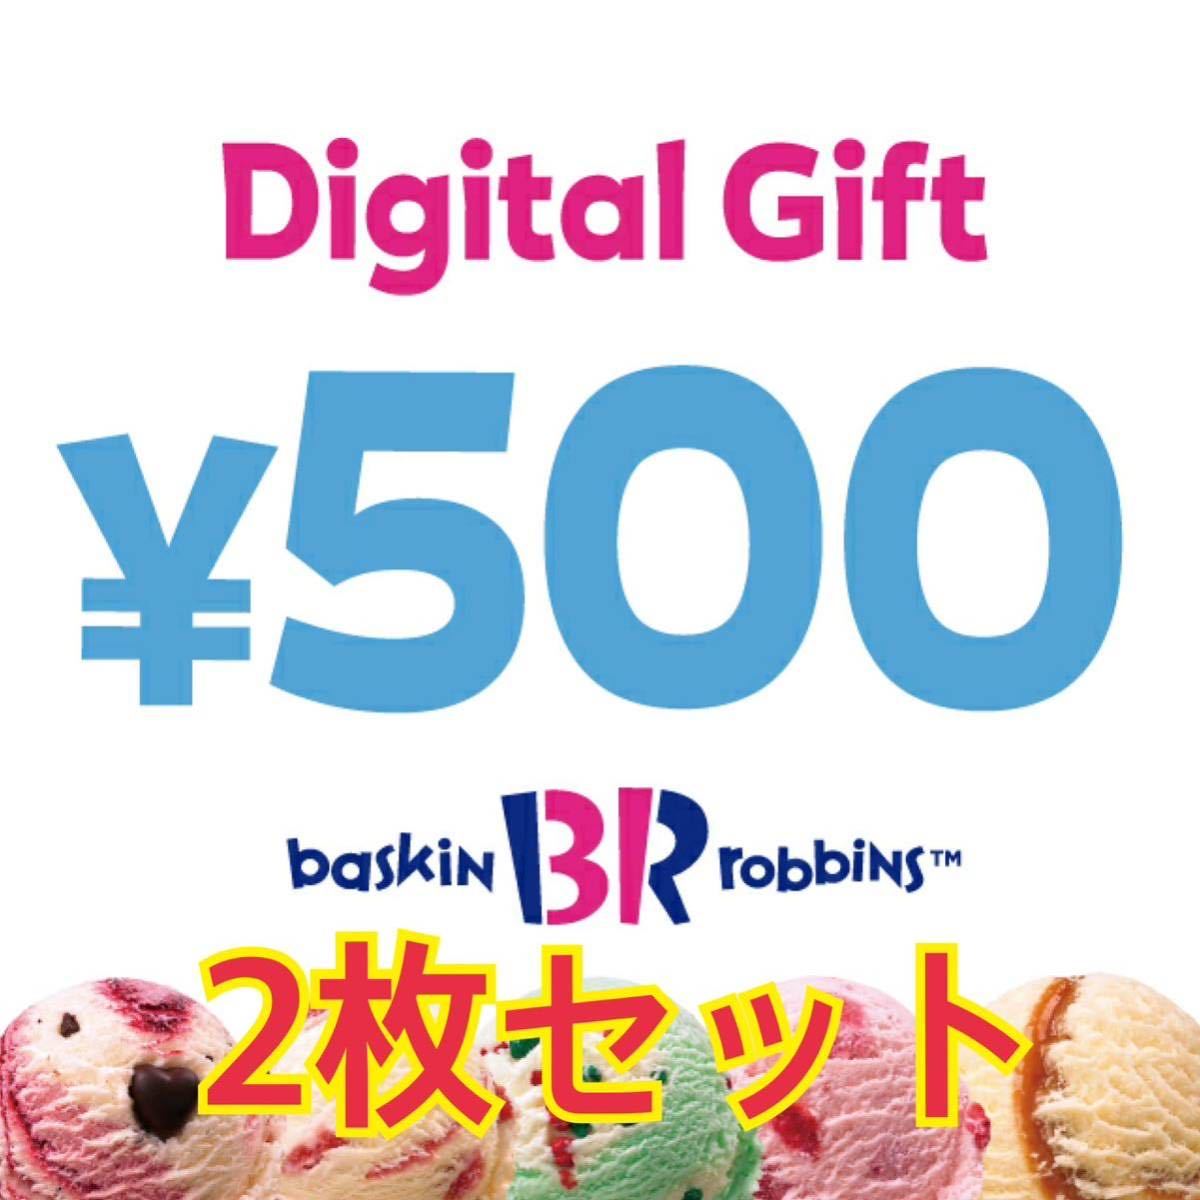 サーティーワンアイスクリーム 500円×2 1000円分 デジタルギフト_画像1